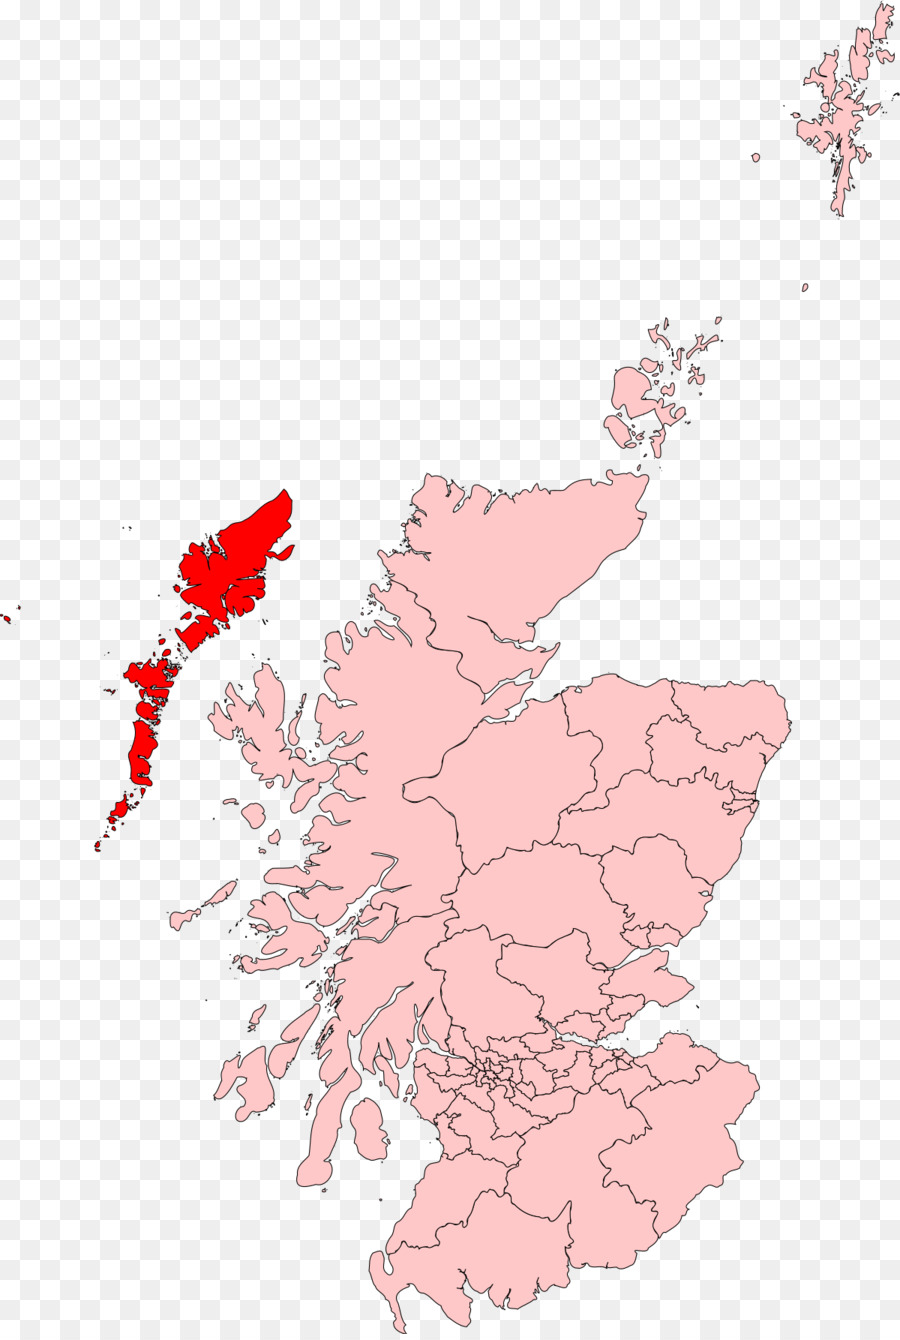 Scozia le elezioni del Parlamento, 2016 Regno Unito elezione generale, il 2017 le elezioni del Parlamento Scozzese, 2011 - 